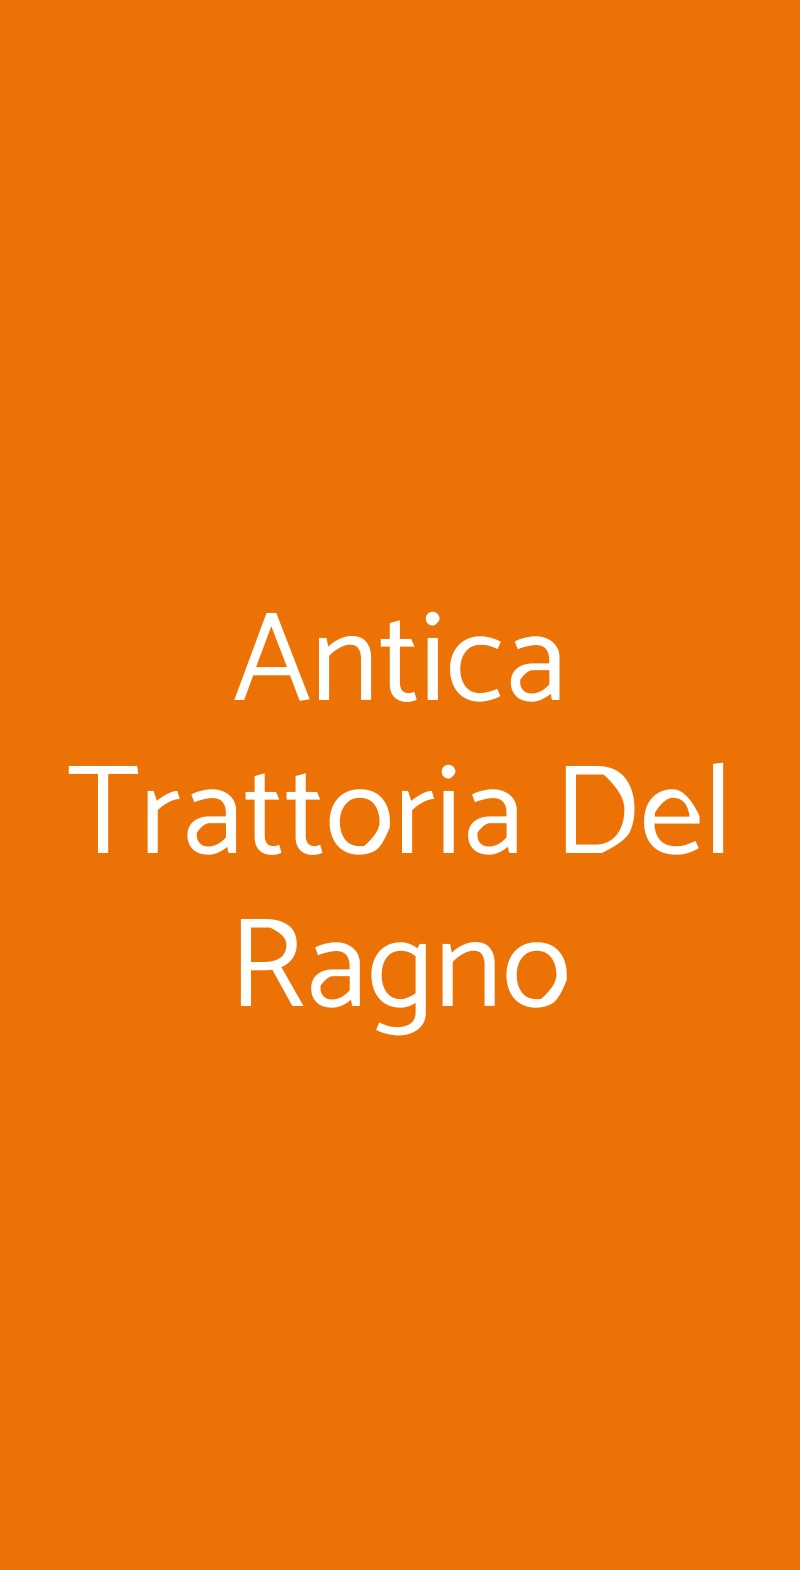 Antica Trattoria Del Ragno Bologna menù 1 pagina